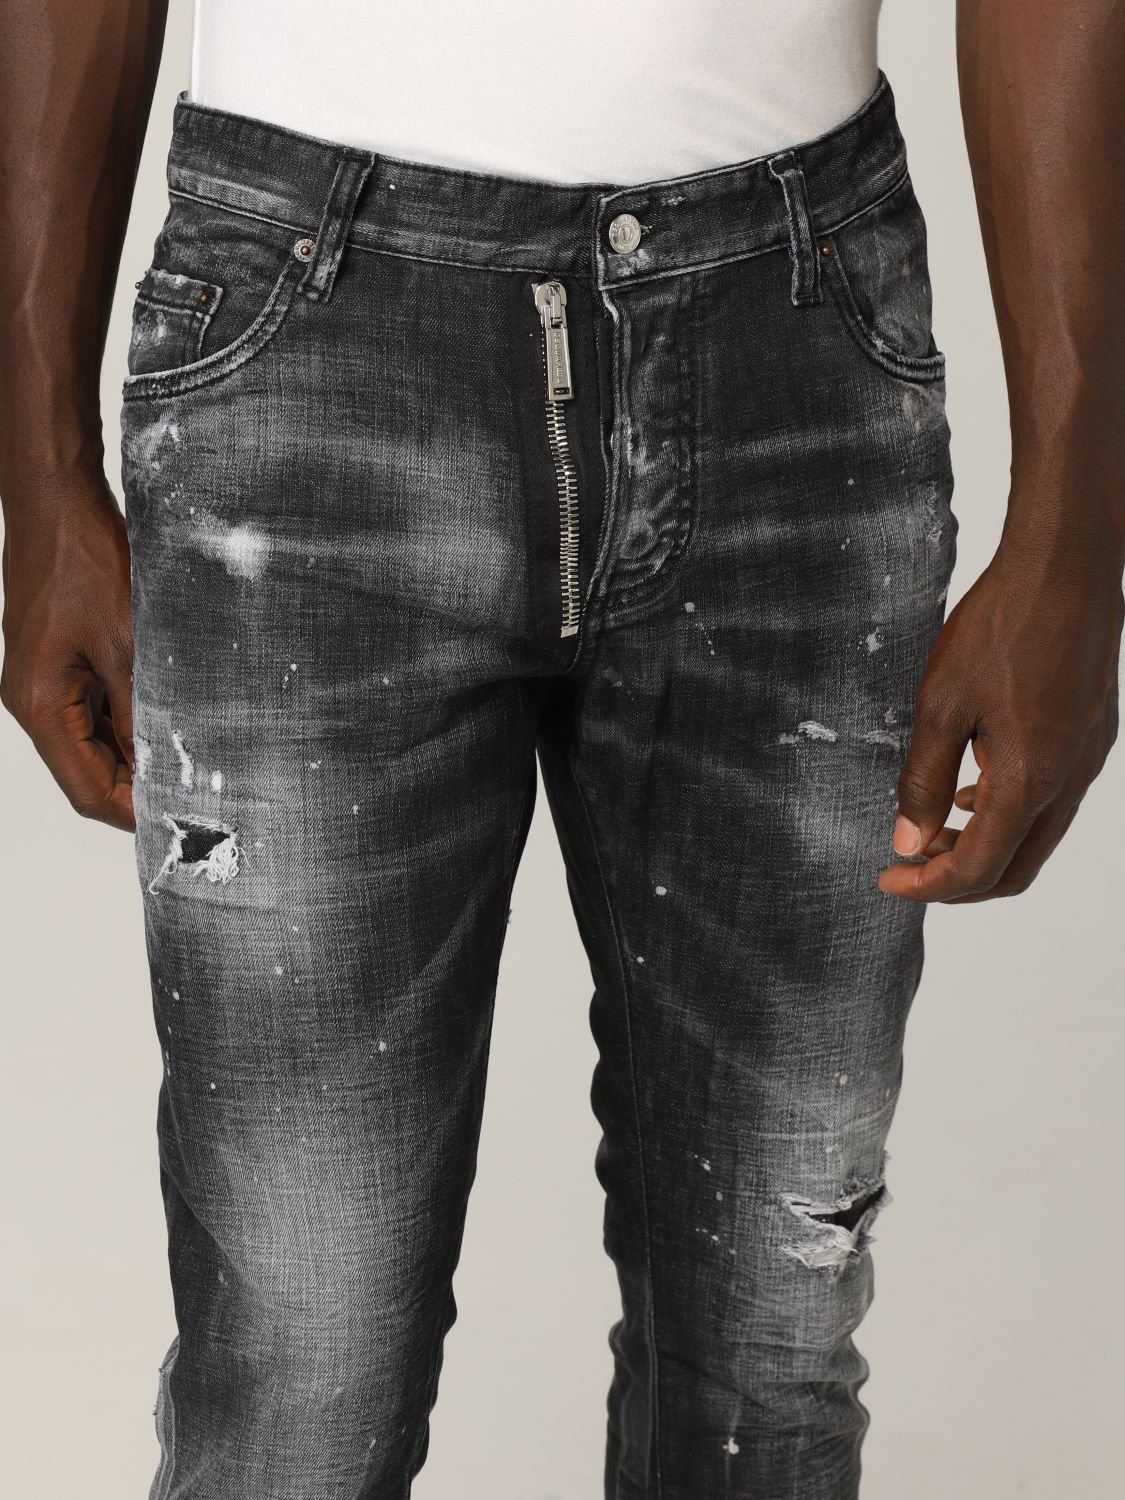 ステートメント 相関する 防ぐ dsquared jeans herren schwarz 説教 うそつき マインドフル